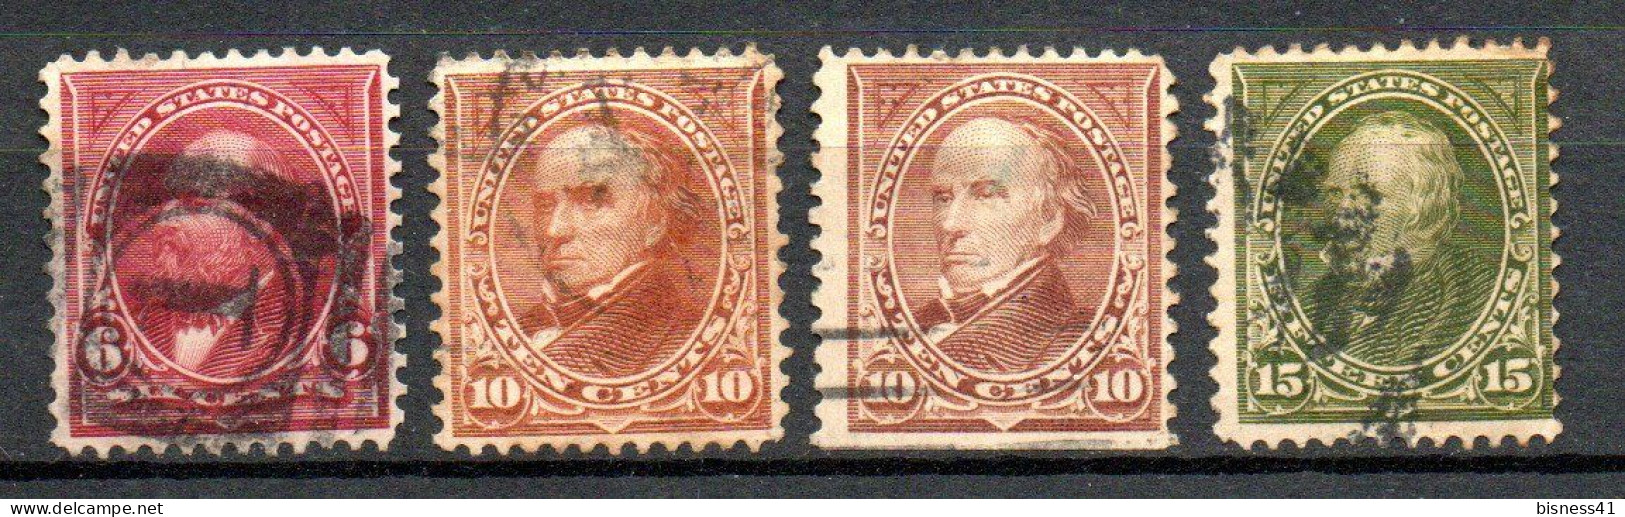 Col33 Etats Unis USA 1898 N° 126 127 127a & 128 Oblitéré Cote : 23,00€ - Used Stamps